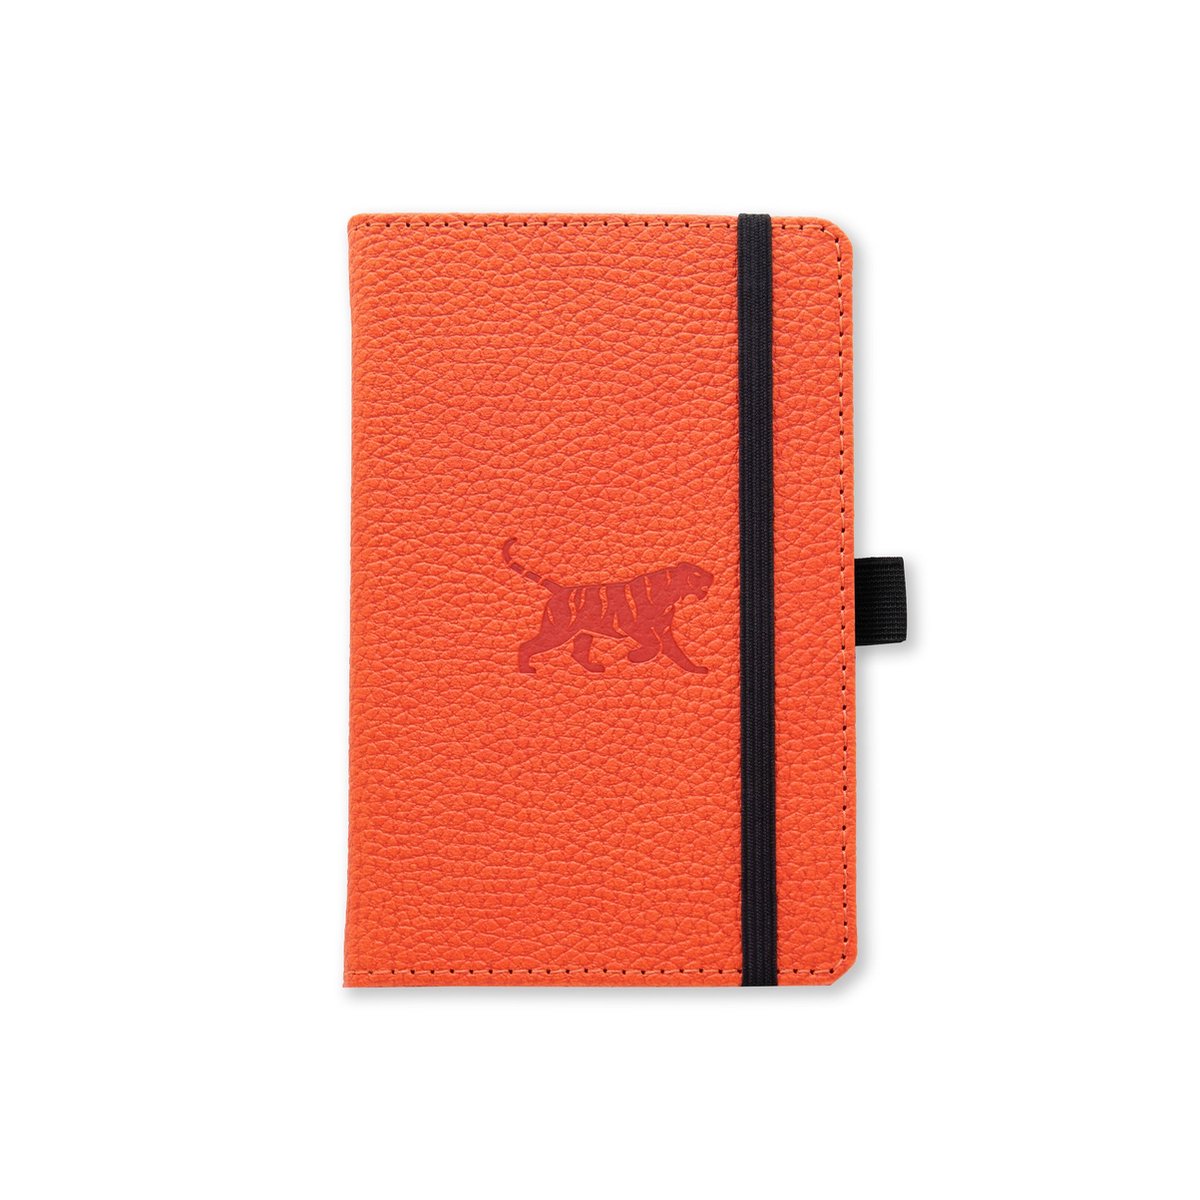 Dingbats* Wildlife A6 Notitieboek – Orange Tiger Stippen – Bullet Journal met 100 gsm Inktvrij Papier – Schetsboek met Harde Kaft, PU-leer, Geperforeerd